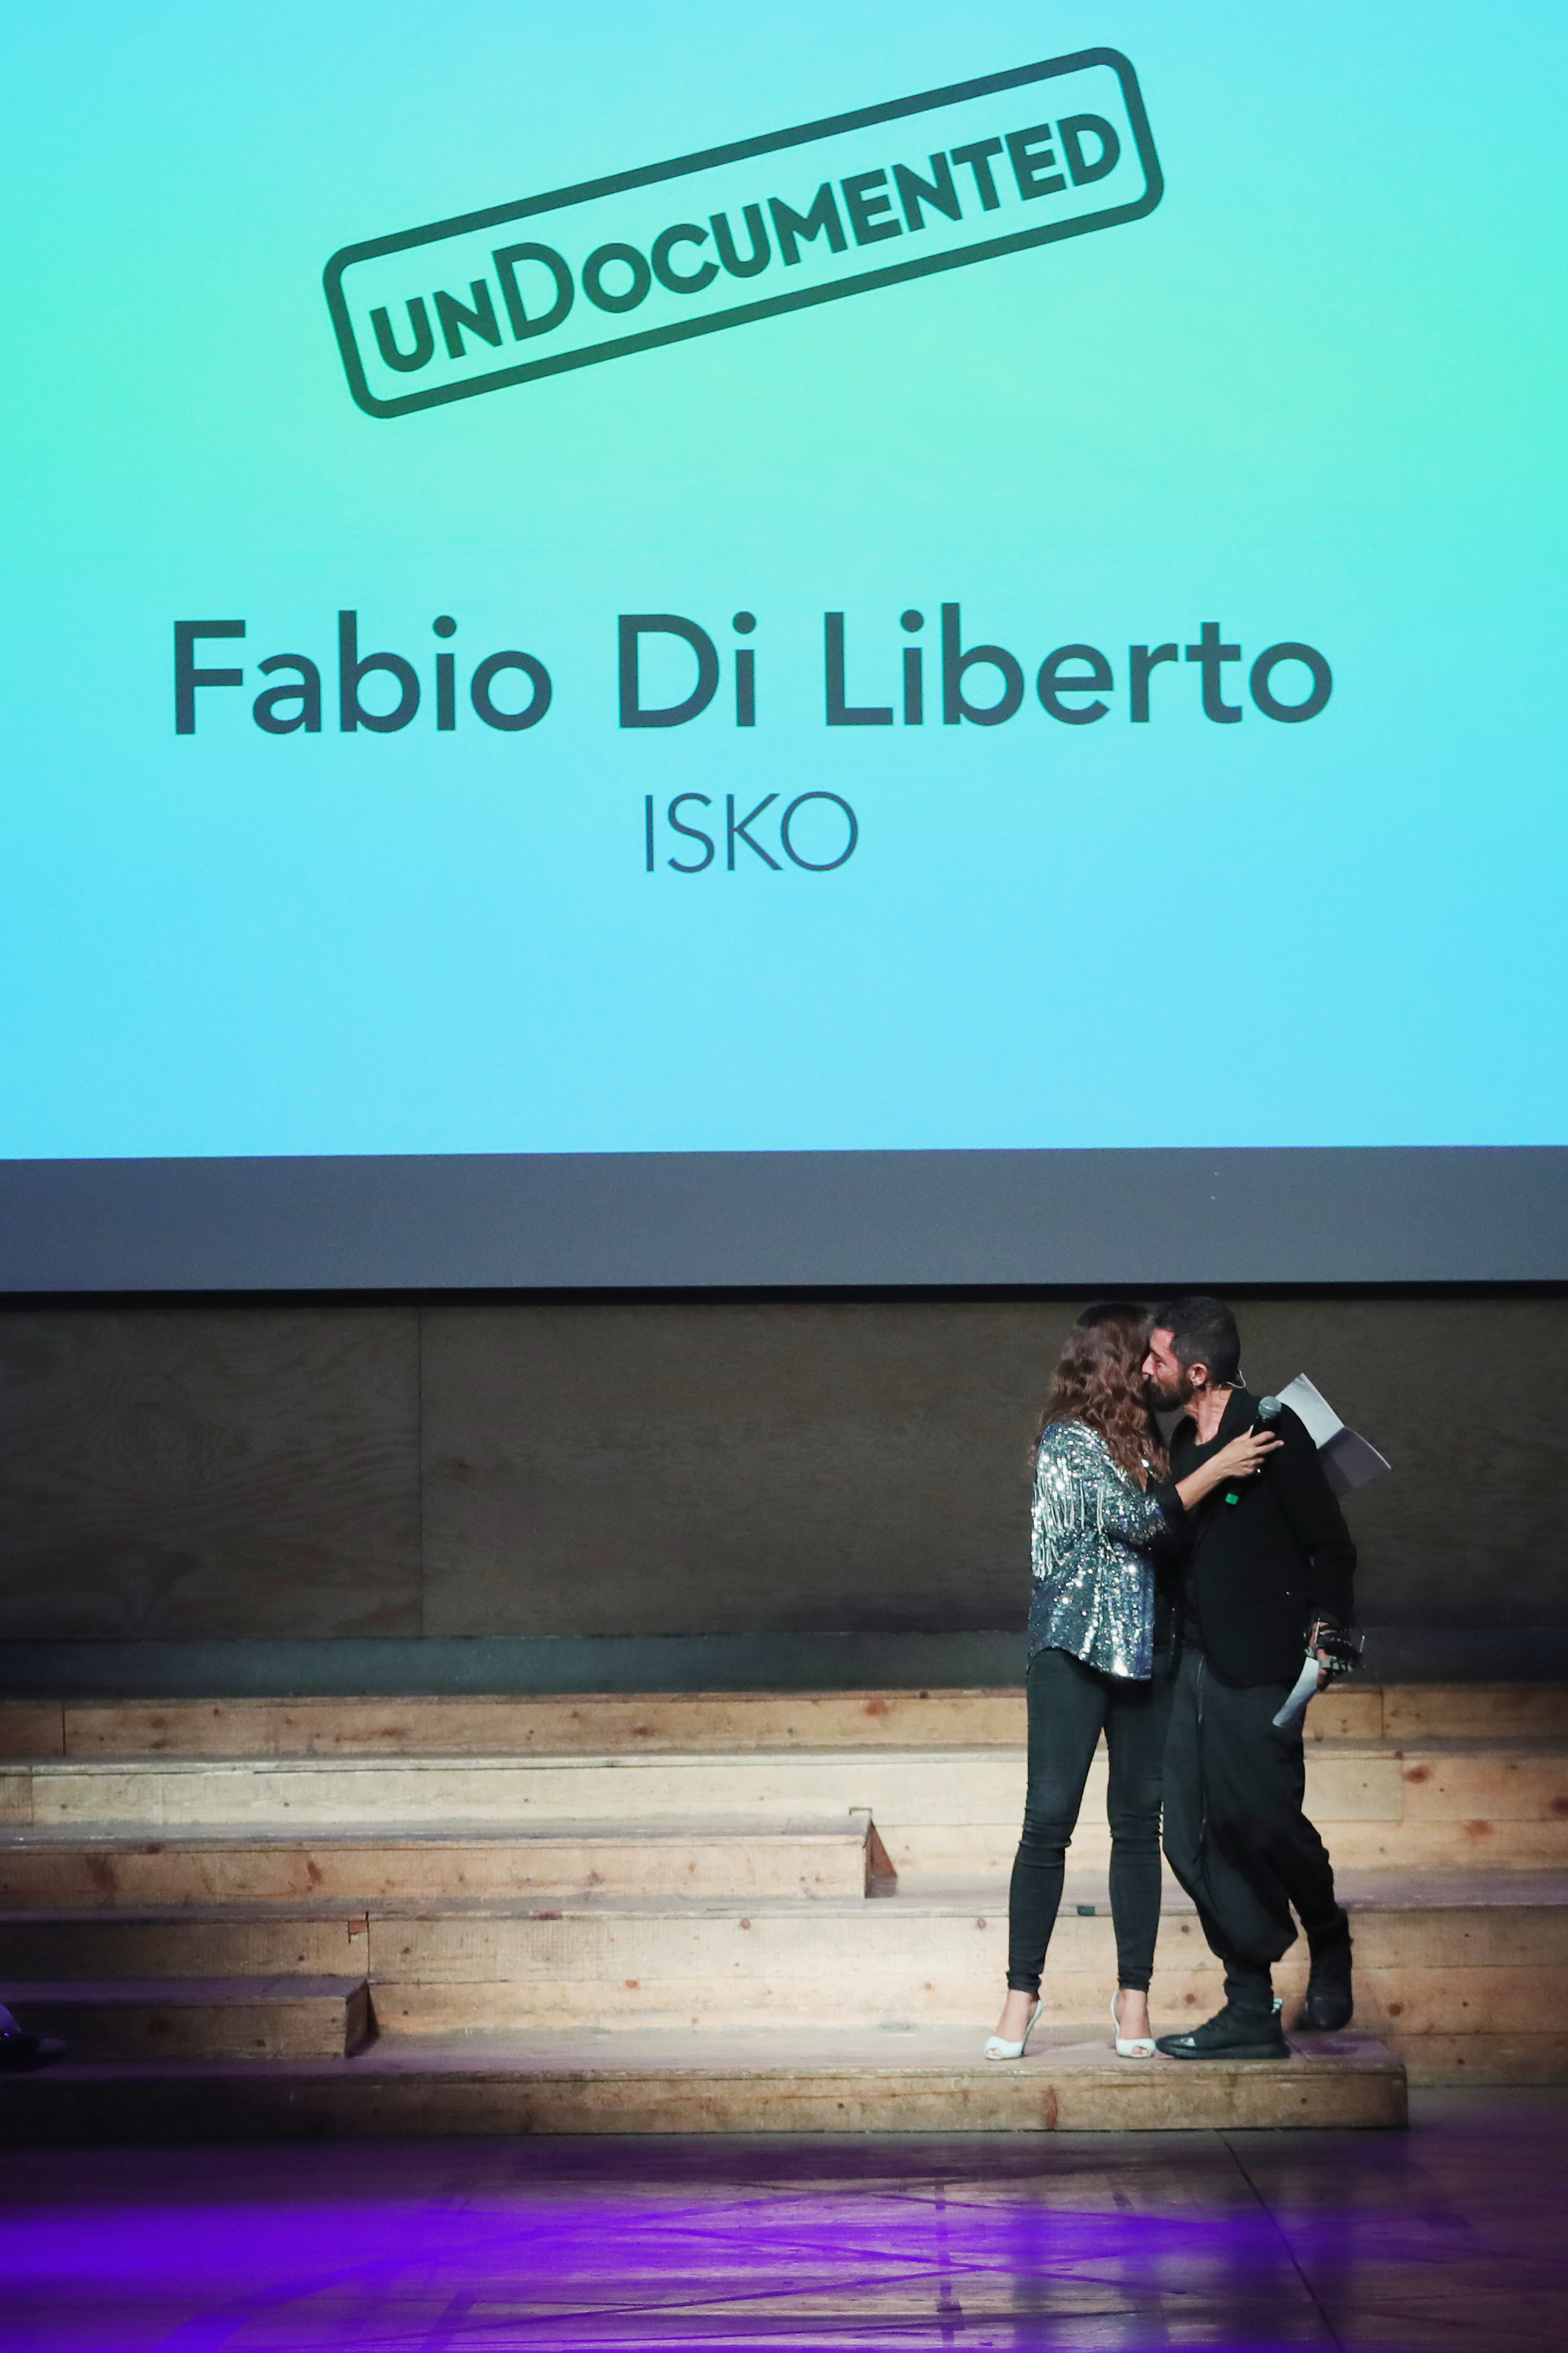 Fabio Di Liberto, ISKO Brand Director